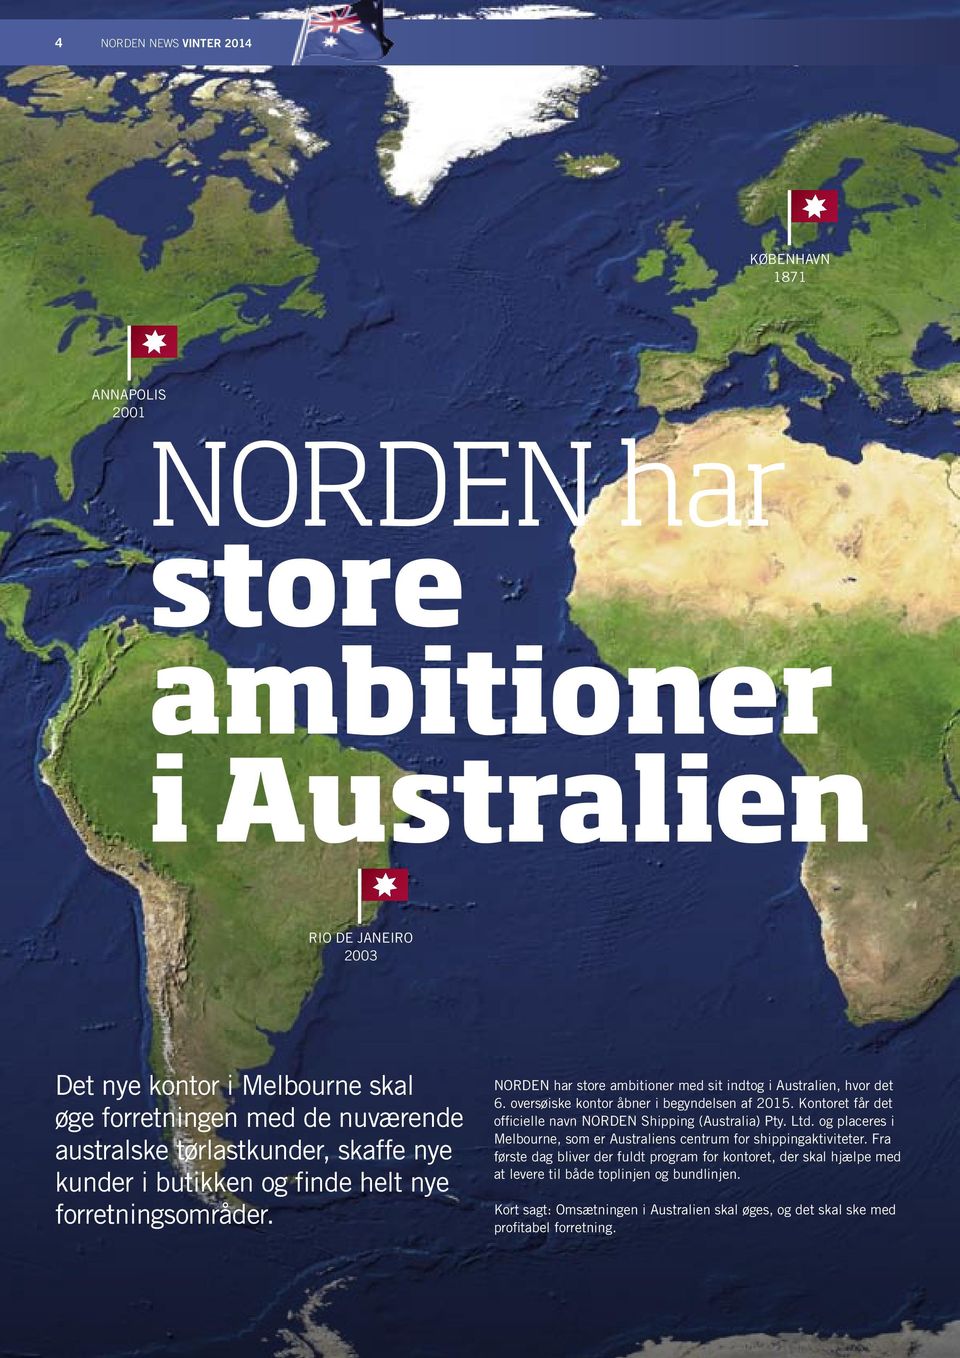 oversøiske kontor åbner i begyndelsen af 2015. Kontoret får det officielle navn NORDEN Shipping (Australia) Pty. Ltd.